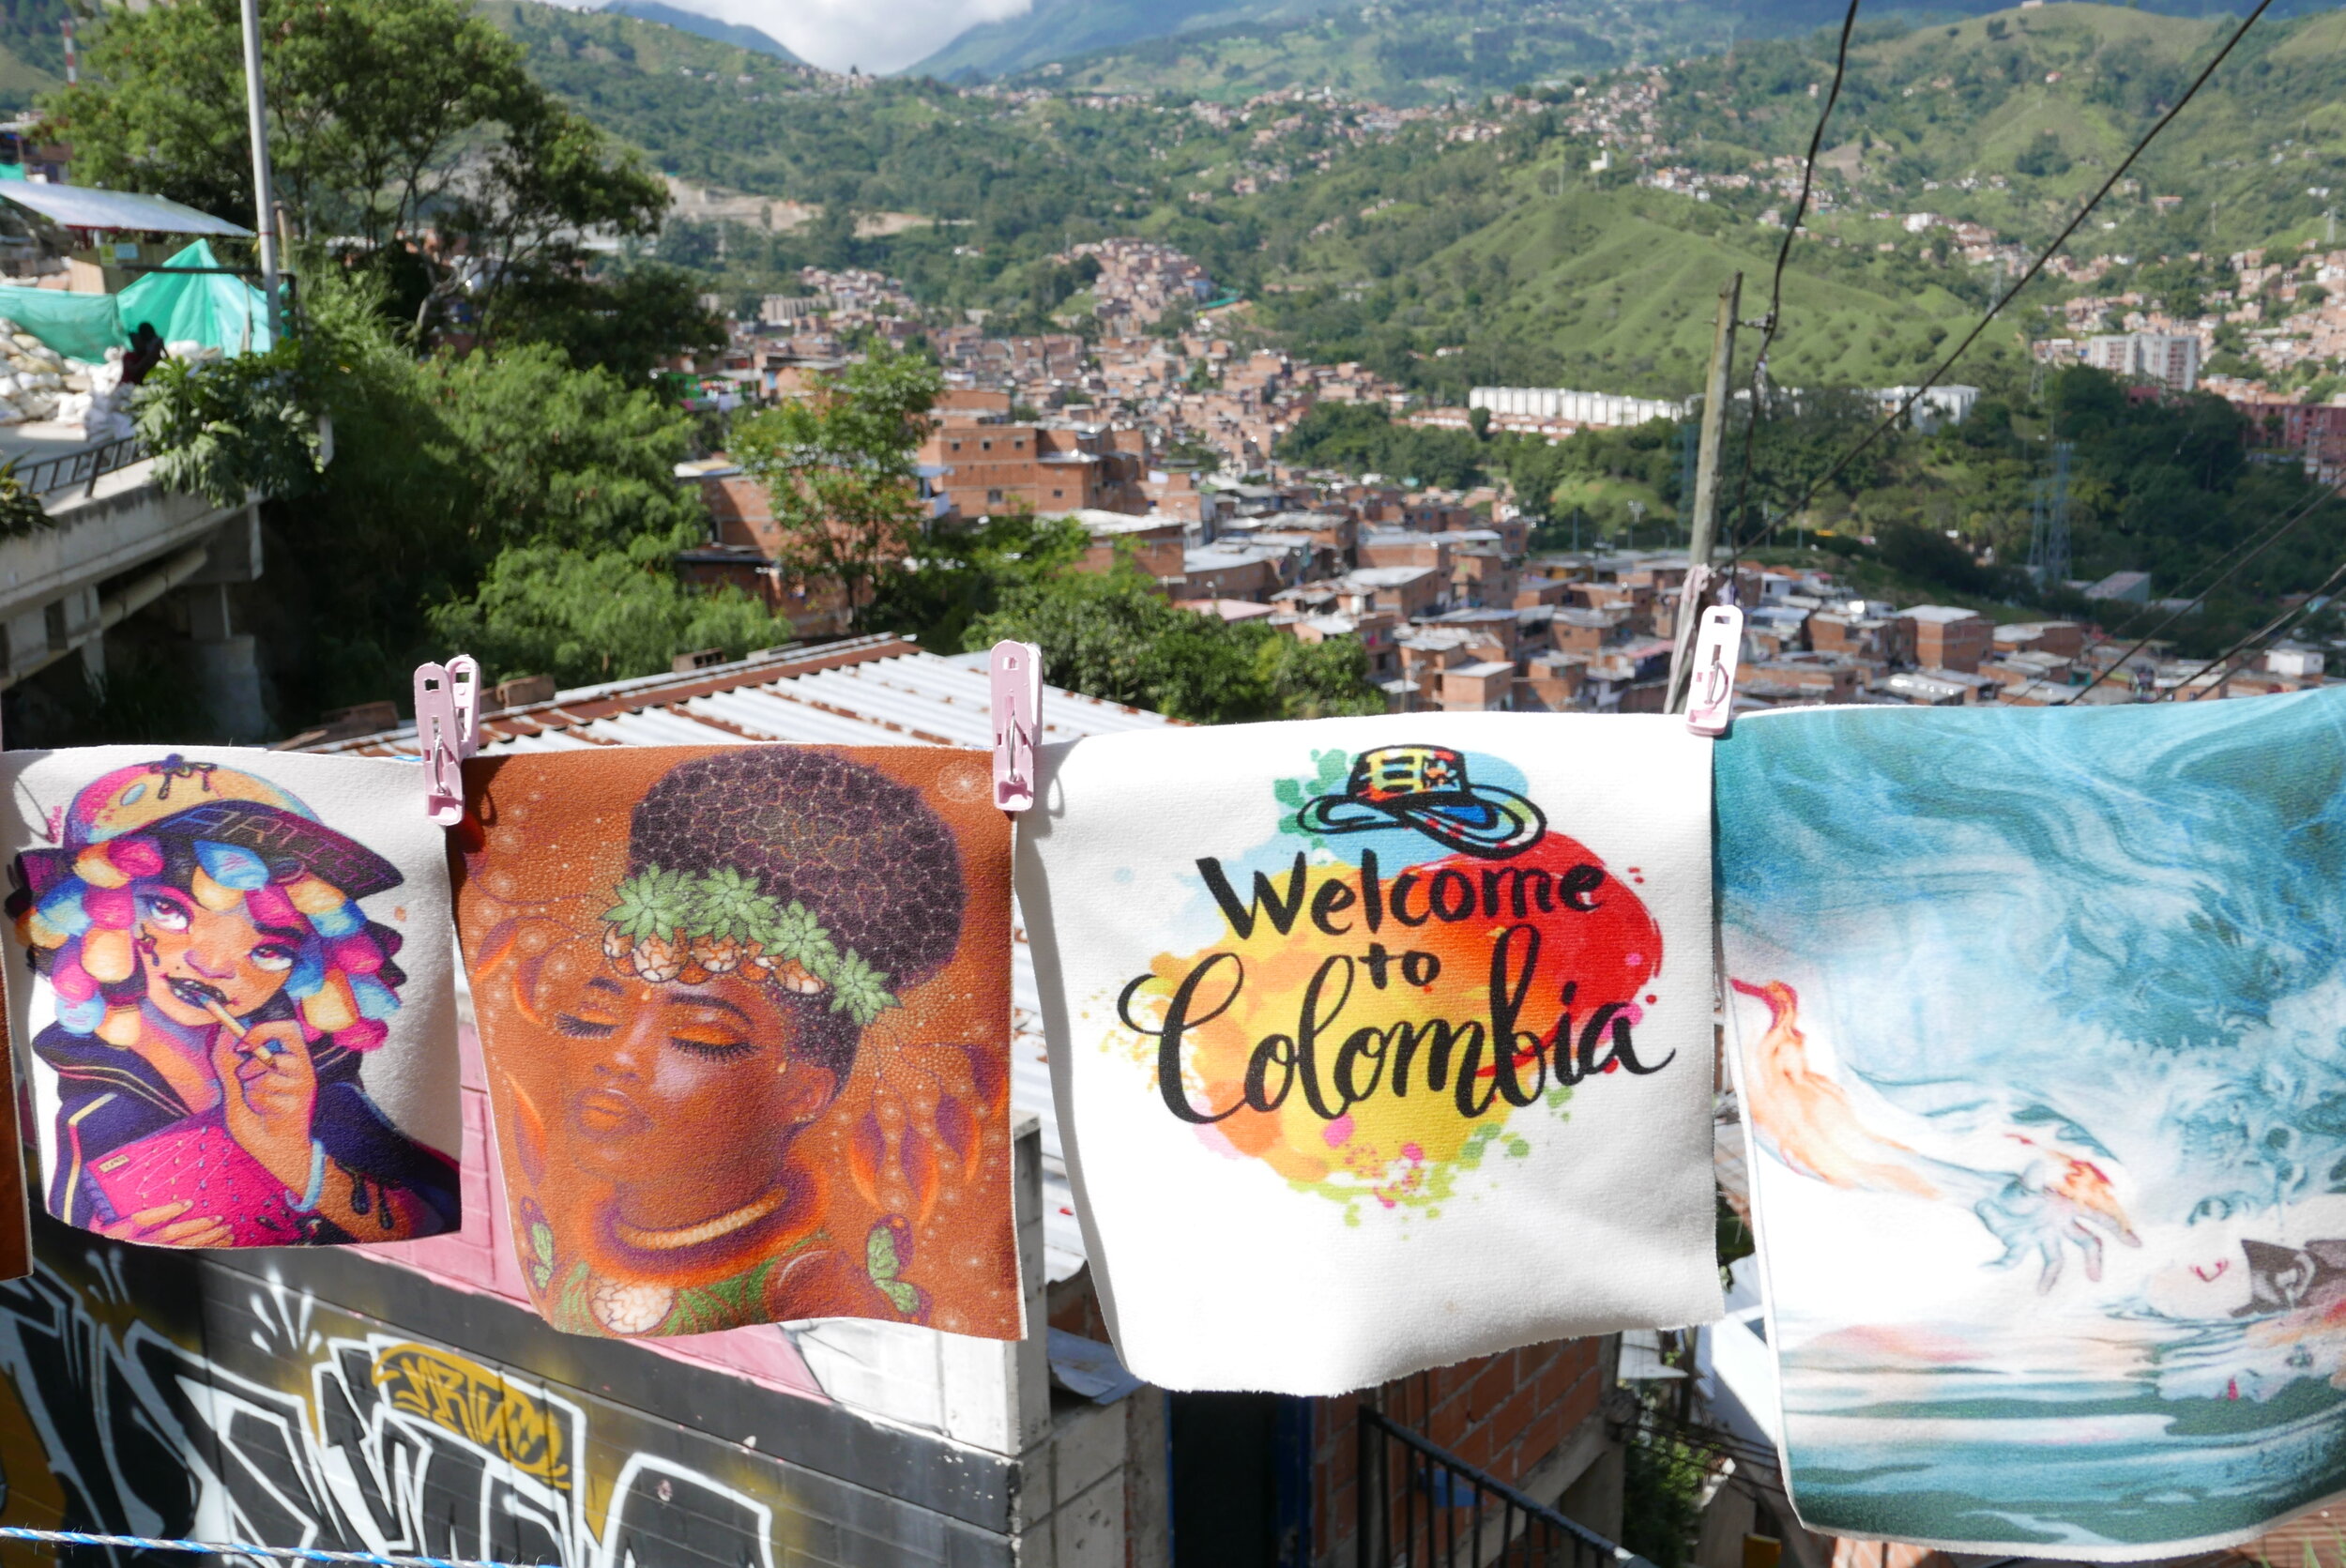 Comuna 13, Medellin